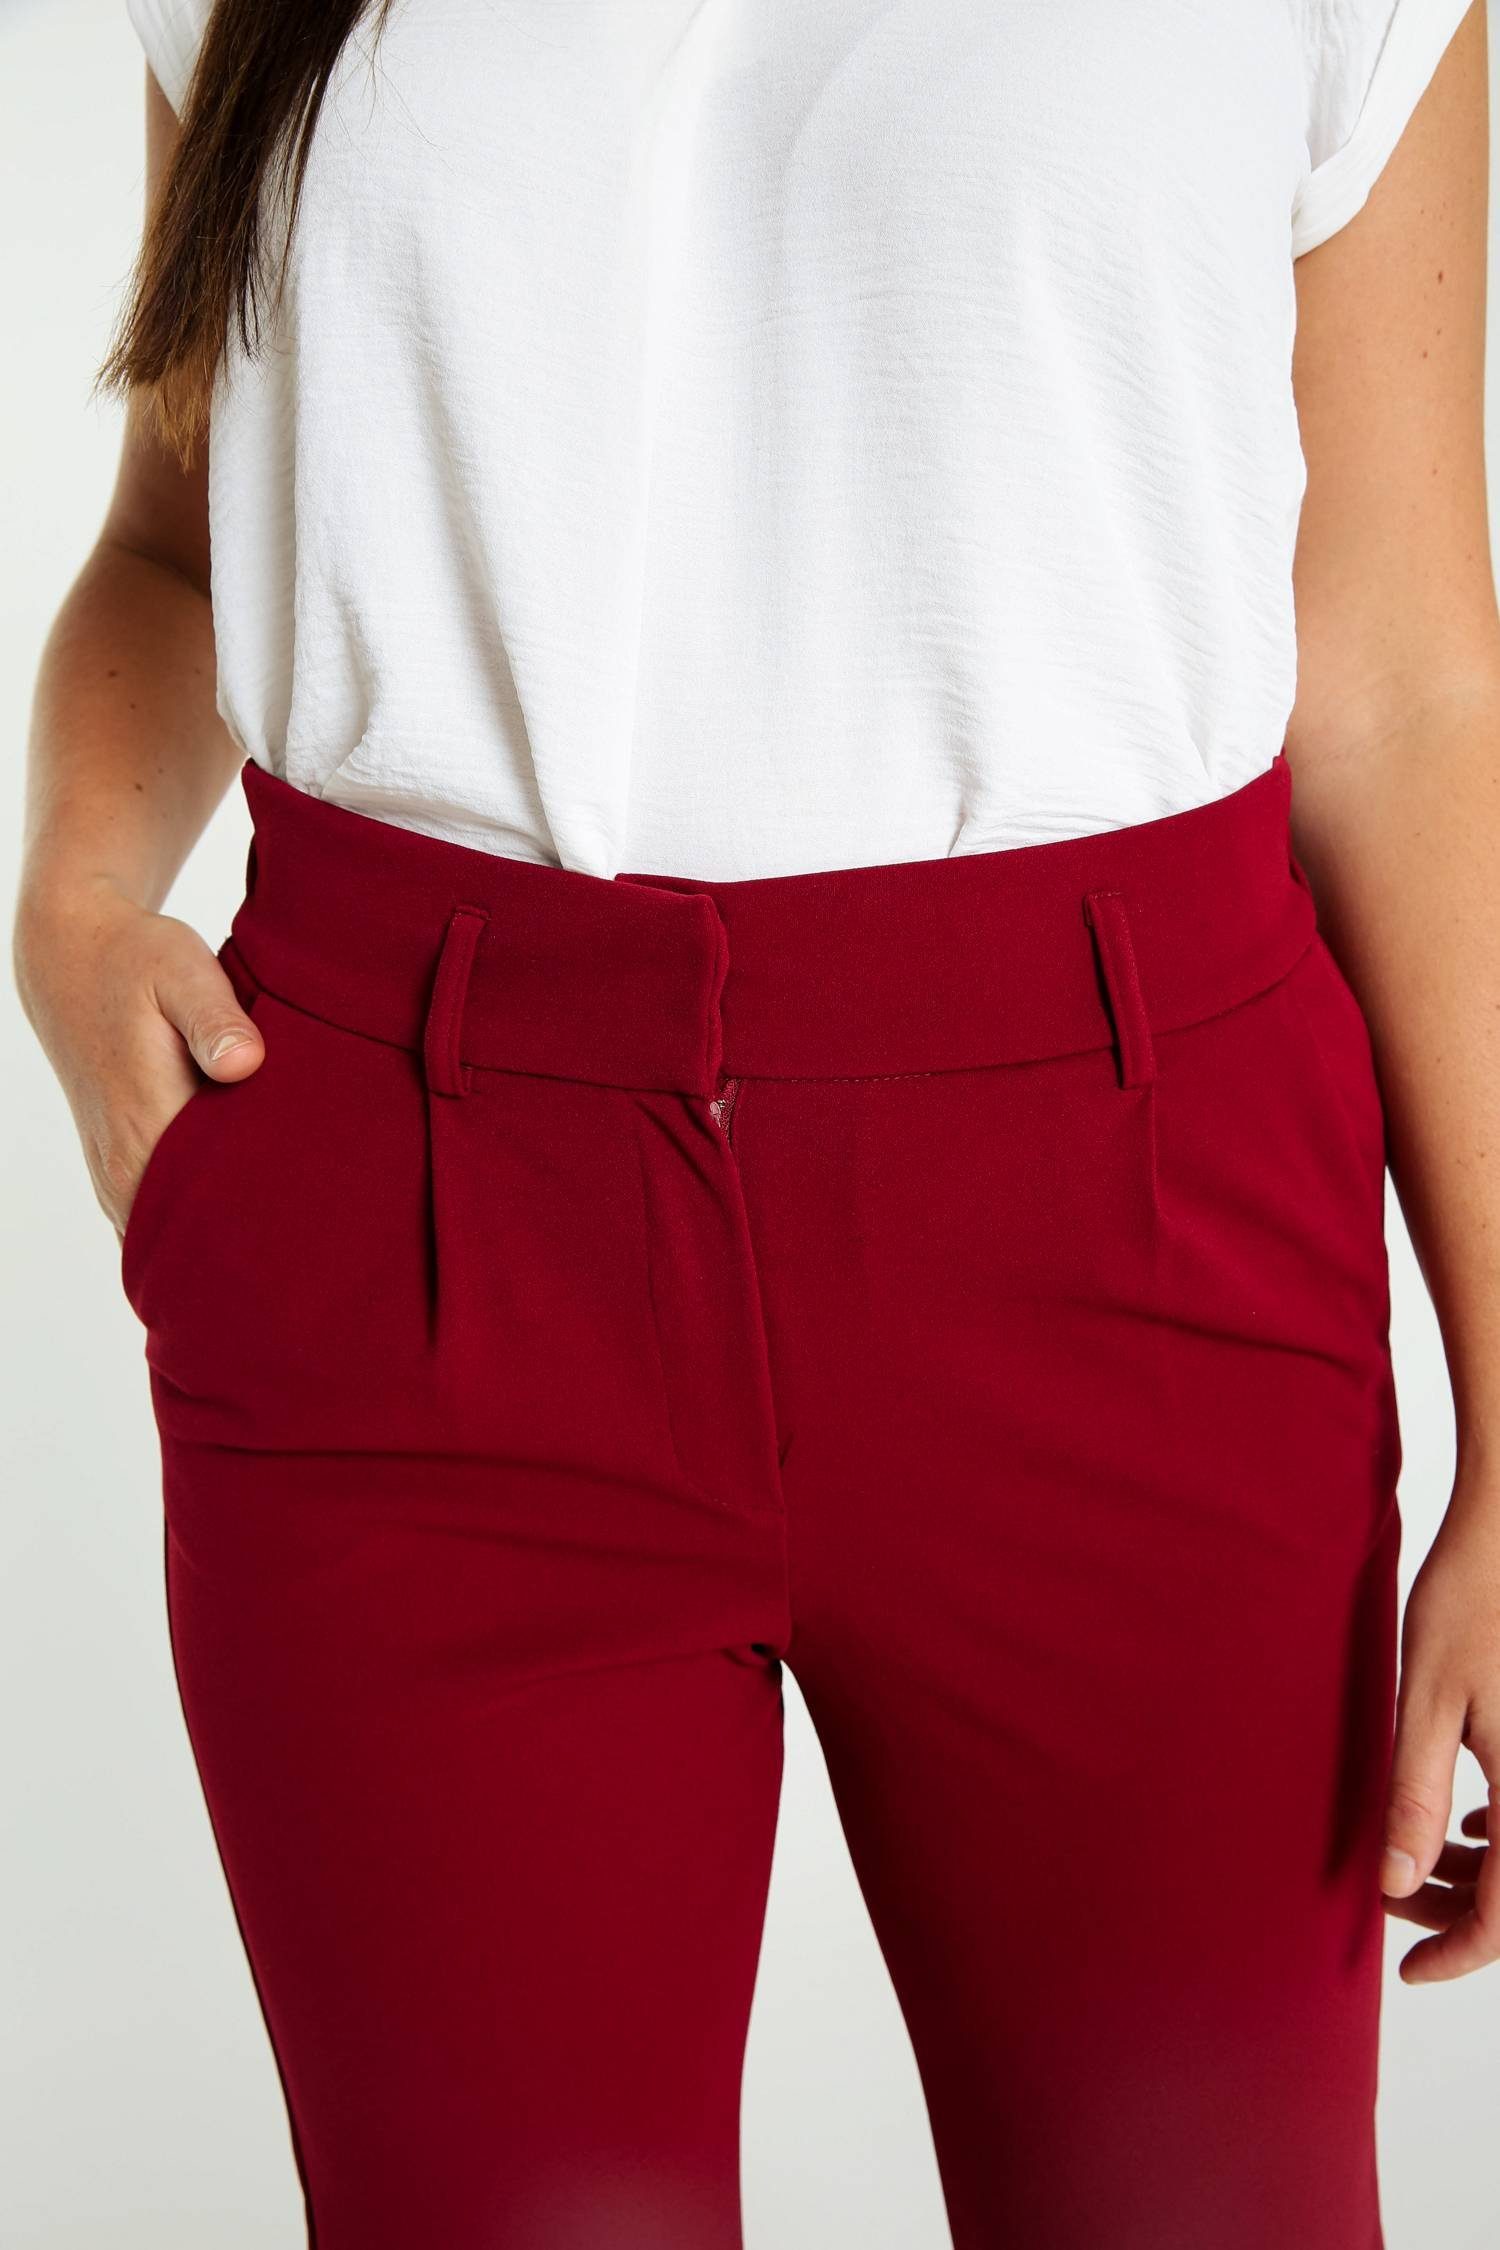 Cassis Zwei 5-Pocket-Hose Unifarbene Hose Mit Taschen